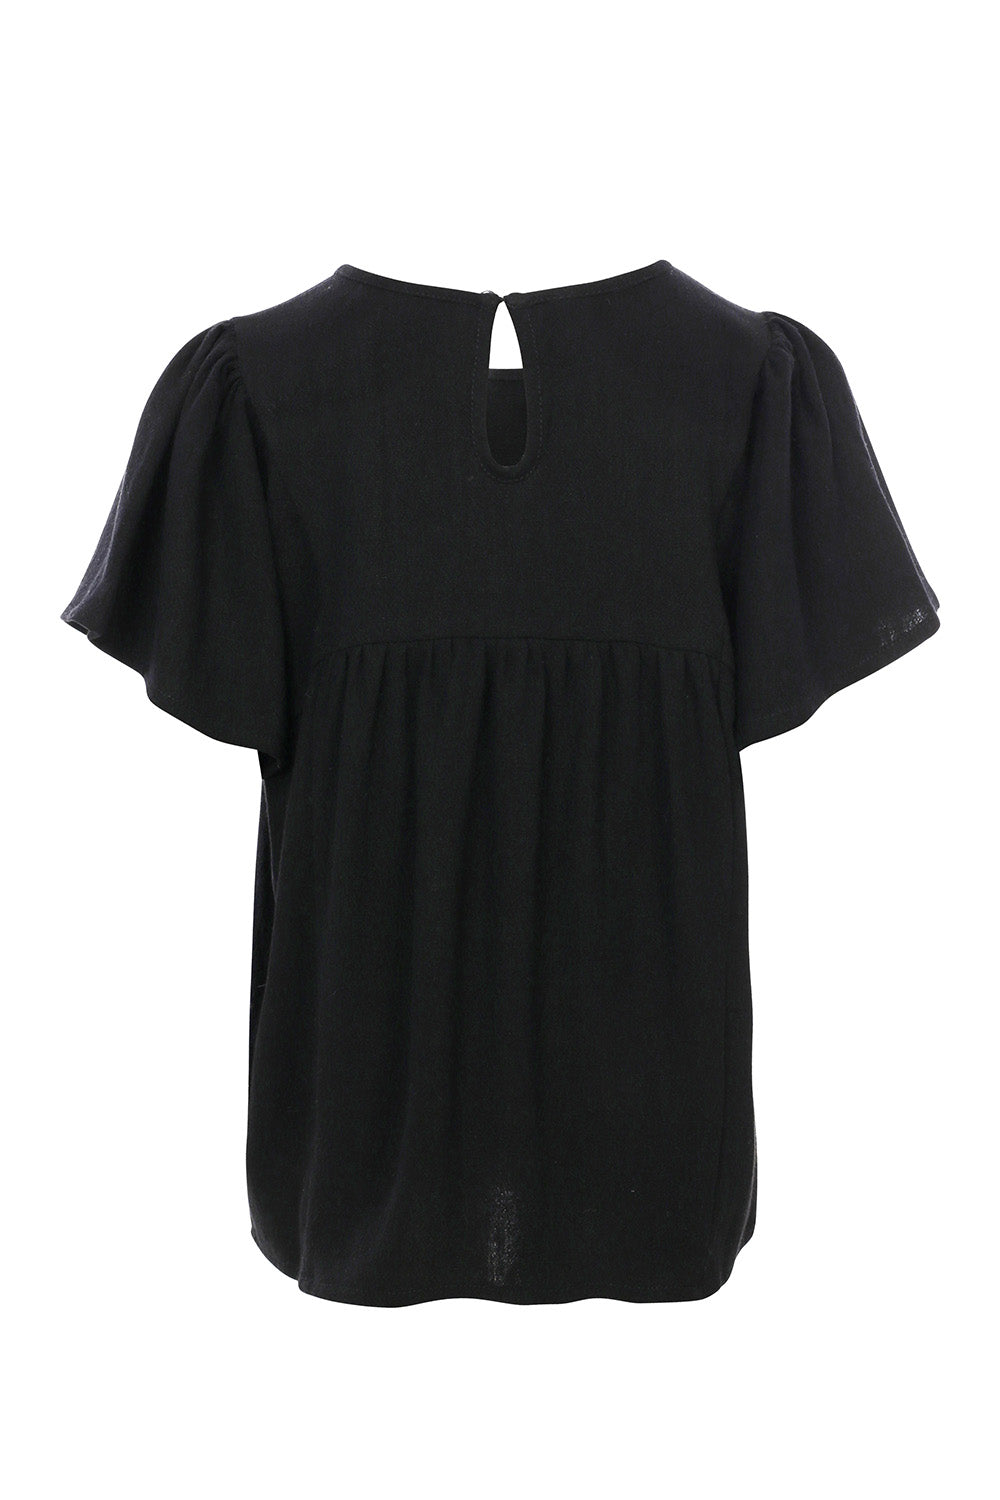 Meisjes Top Short Sleeves van LOOXS Little in de kleur Black in maat 128.